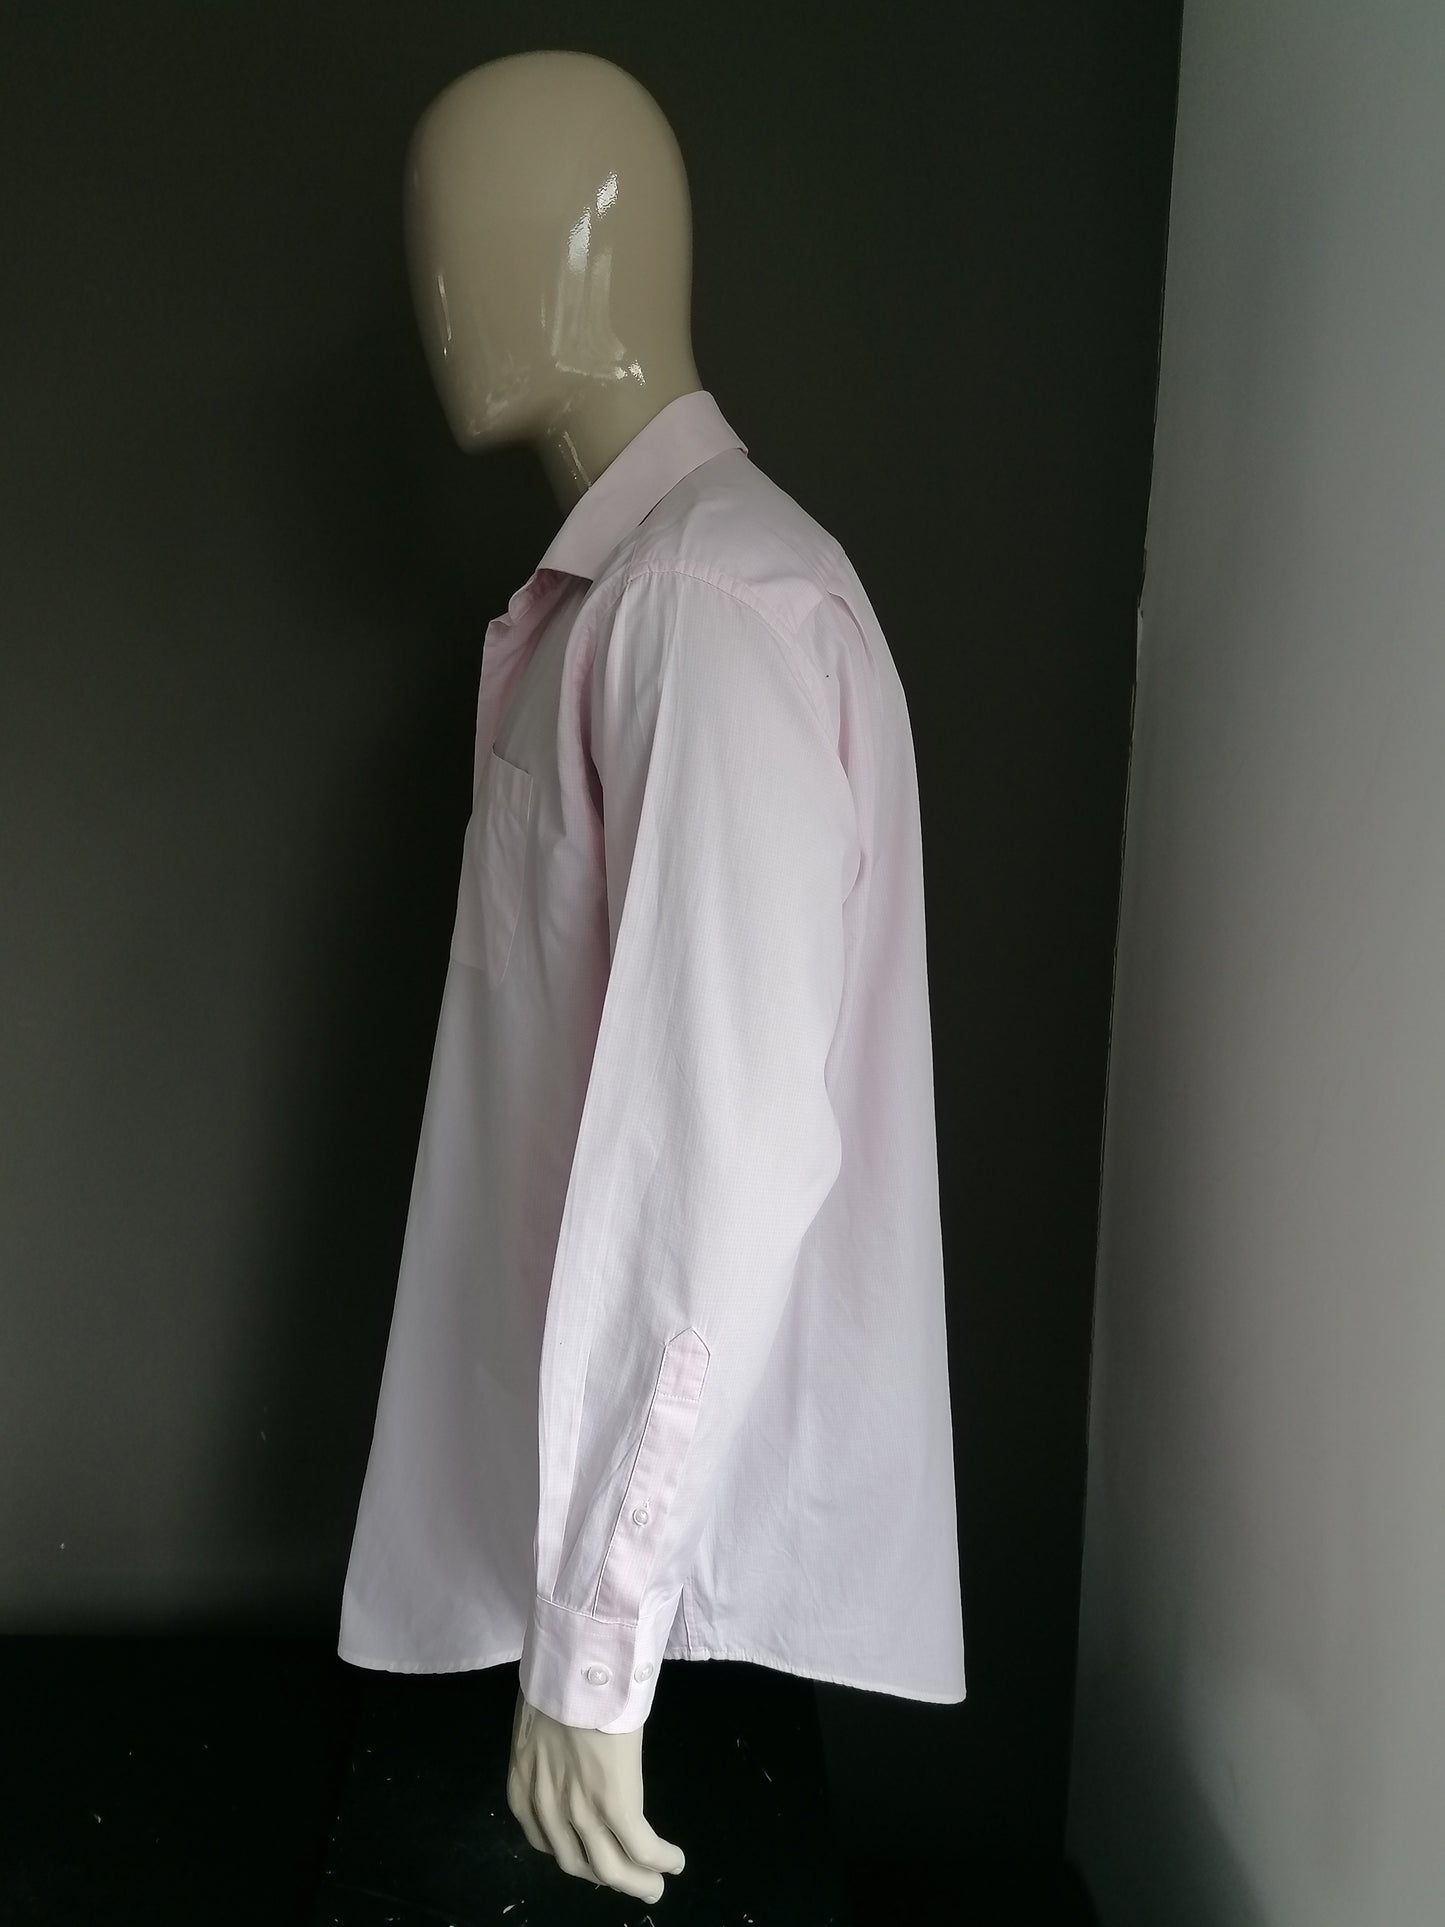 Nautica shirt pink white motif. Size XXL / 2XL